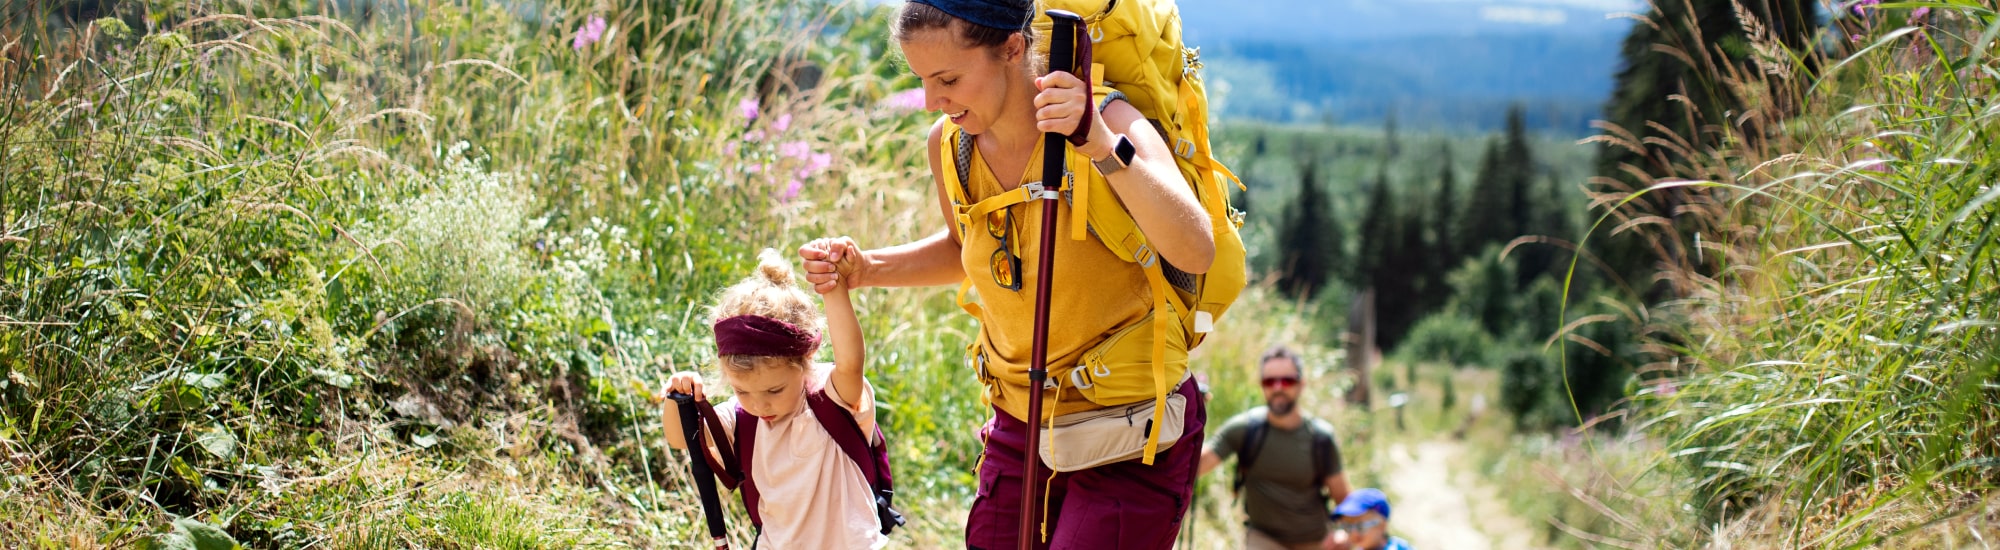 Une maman aidant sa fille sur un chemin de randonnée en pleine montagne. 